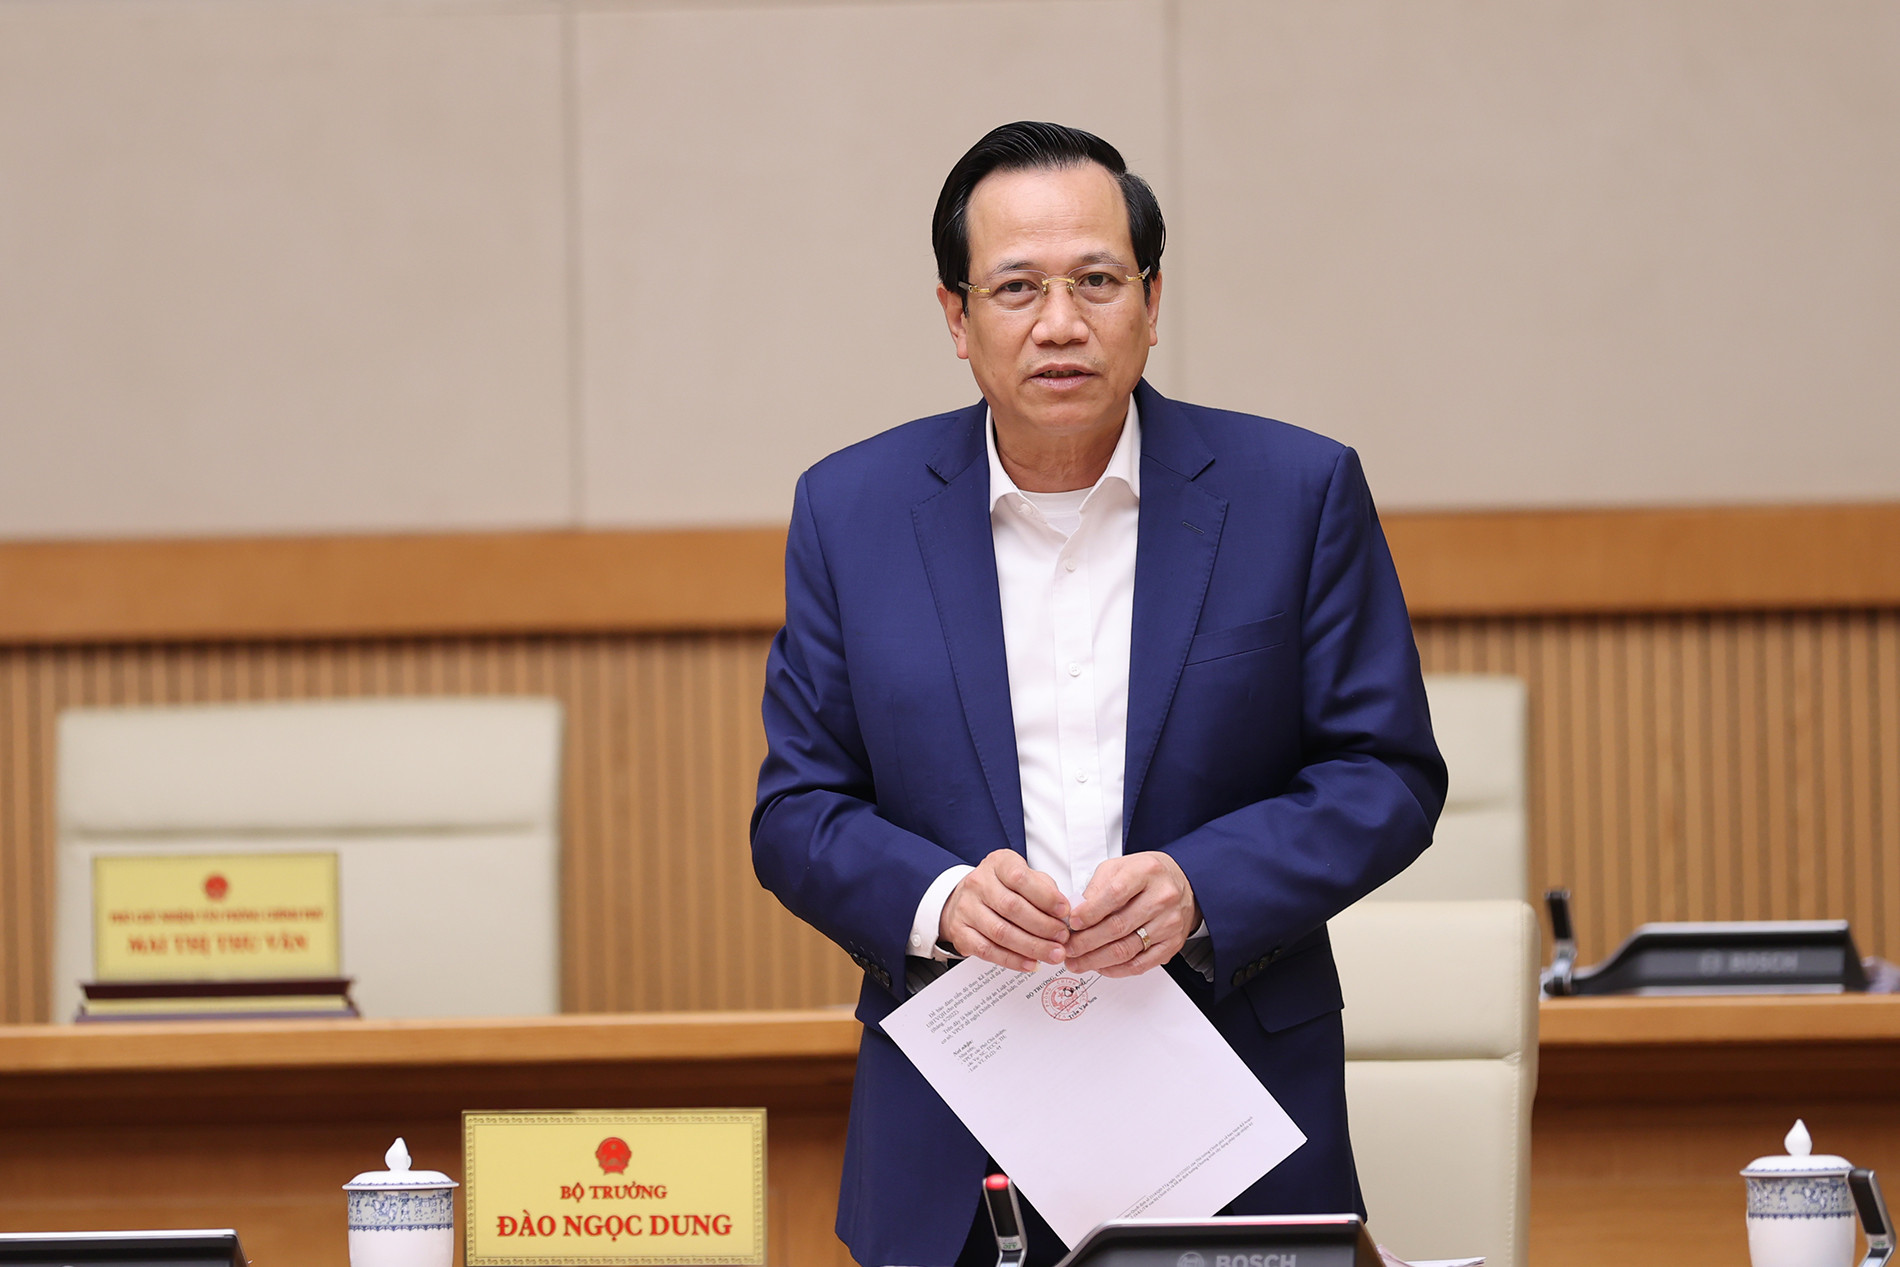 Loạt ảnh: Thủ tướng chủ trì Phiên họp chính phủ chuyên đề về xây dựng pháp luật - Ảnh 9.